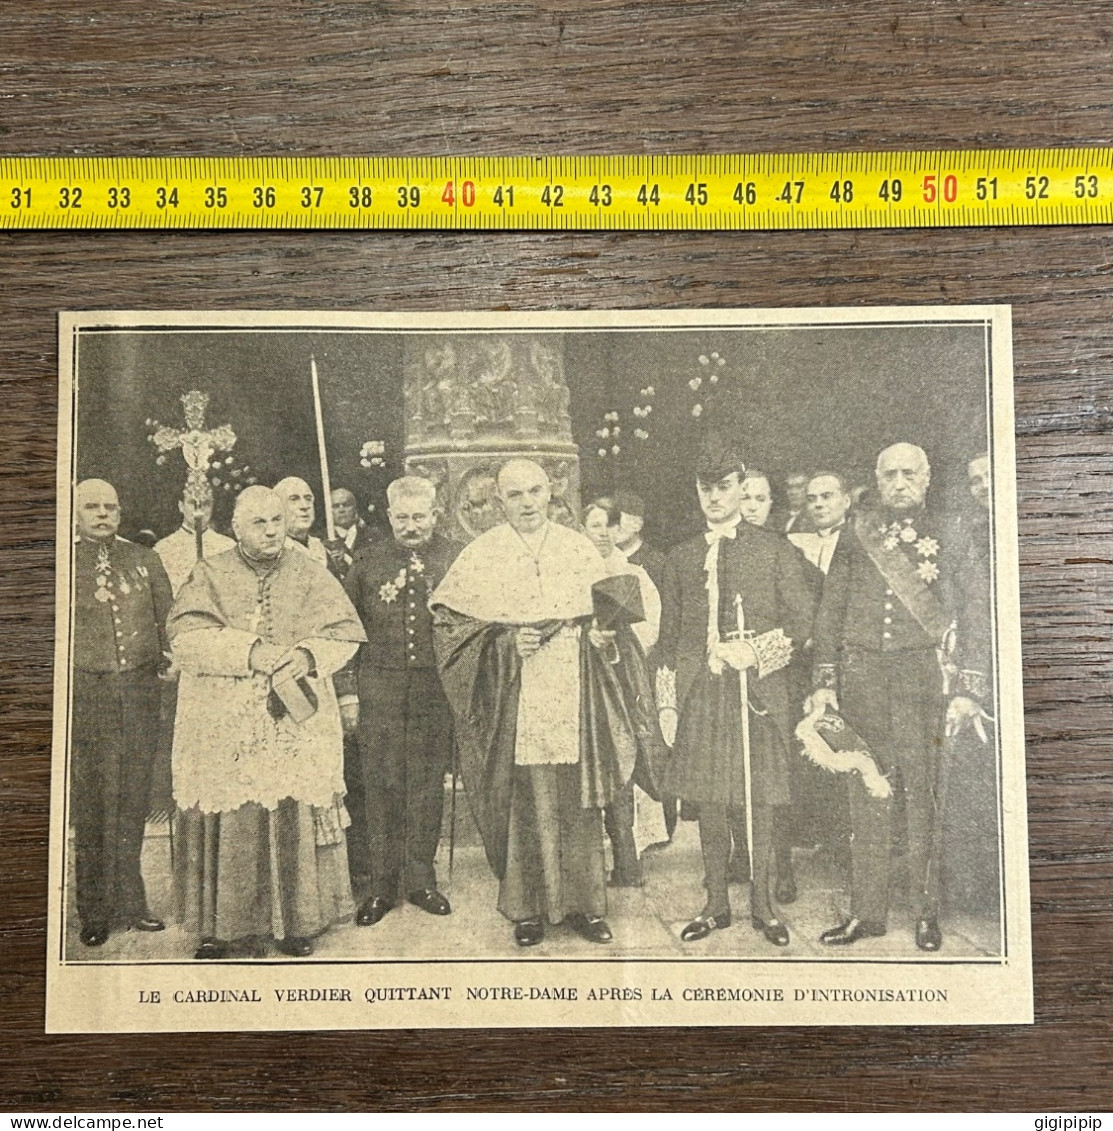 1930 GHI2 CARDINAL VERDIER QUITTANT NOTRE-DAME APRES LA CÉREMONIE D'INTRONISATION à Paris Grâce - Collections